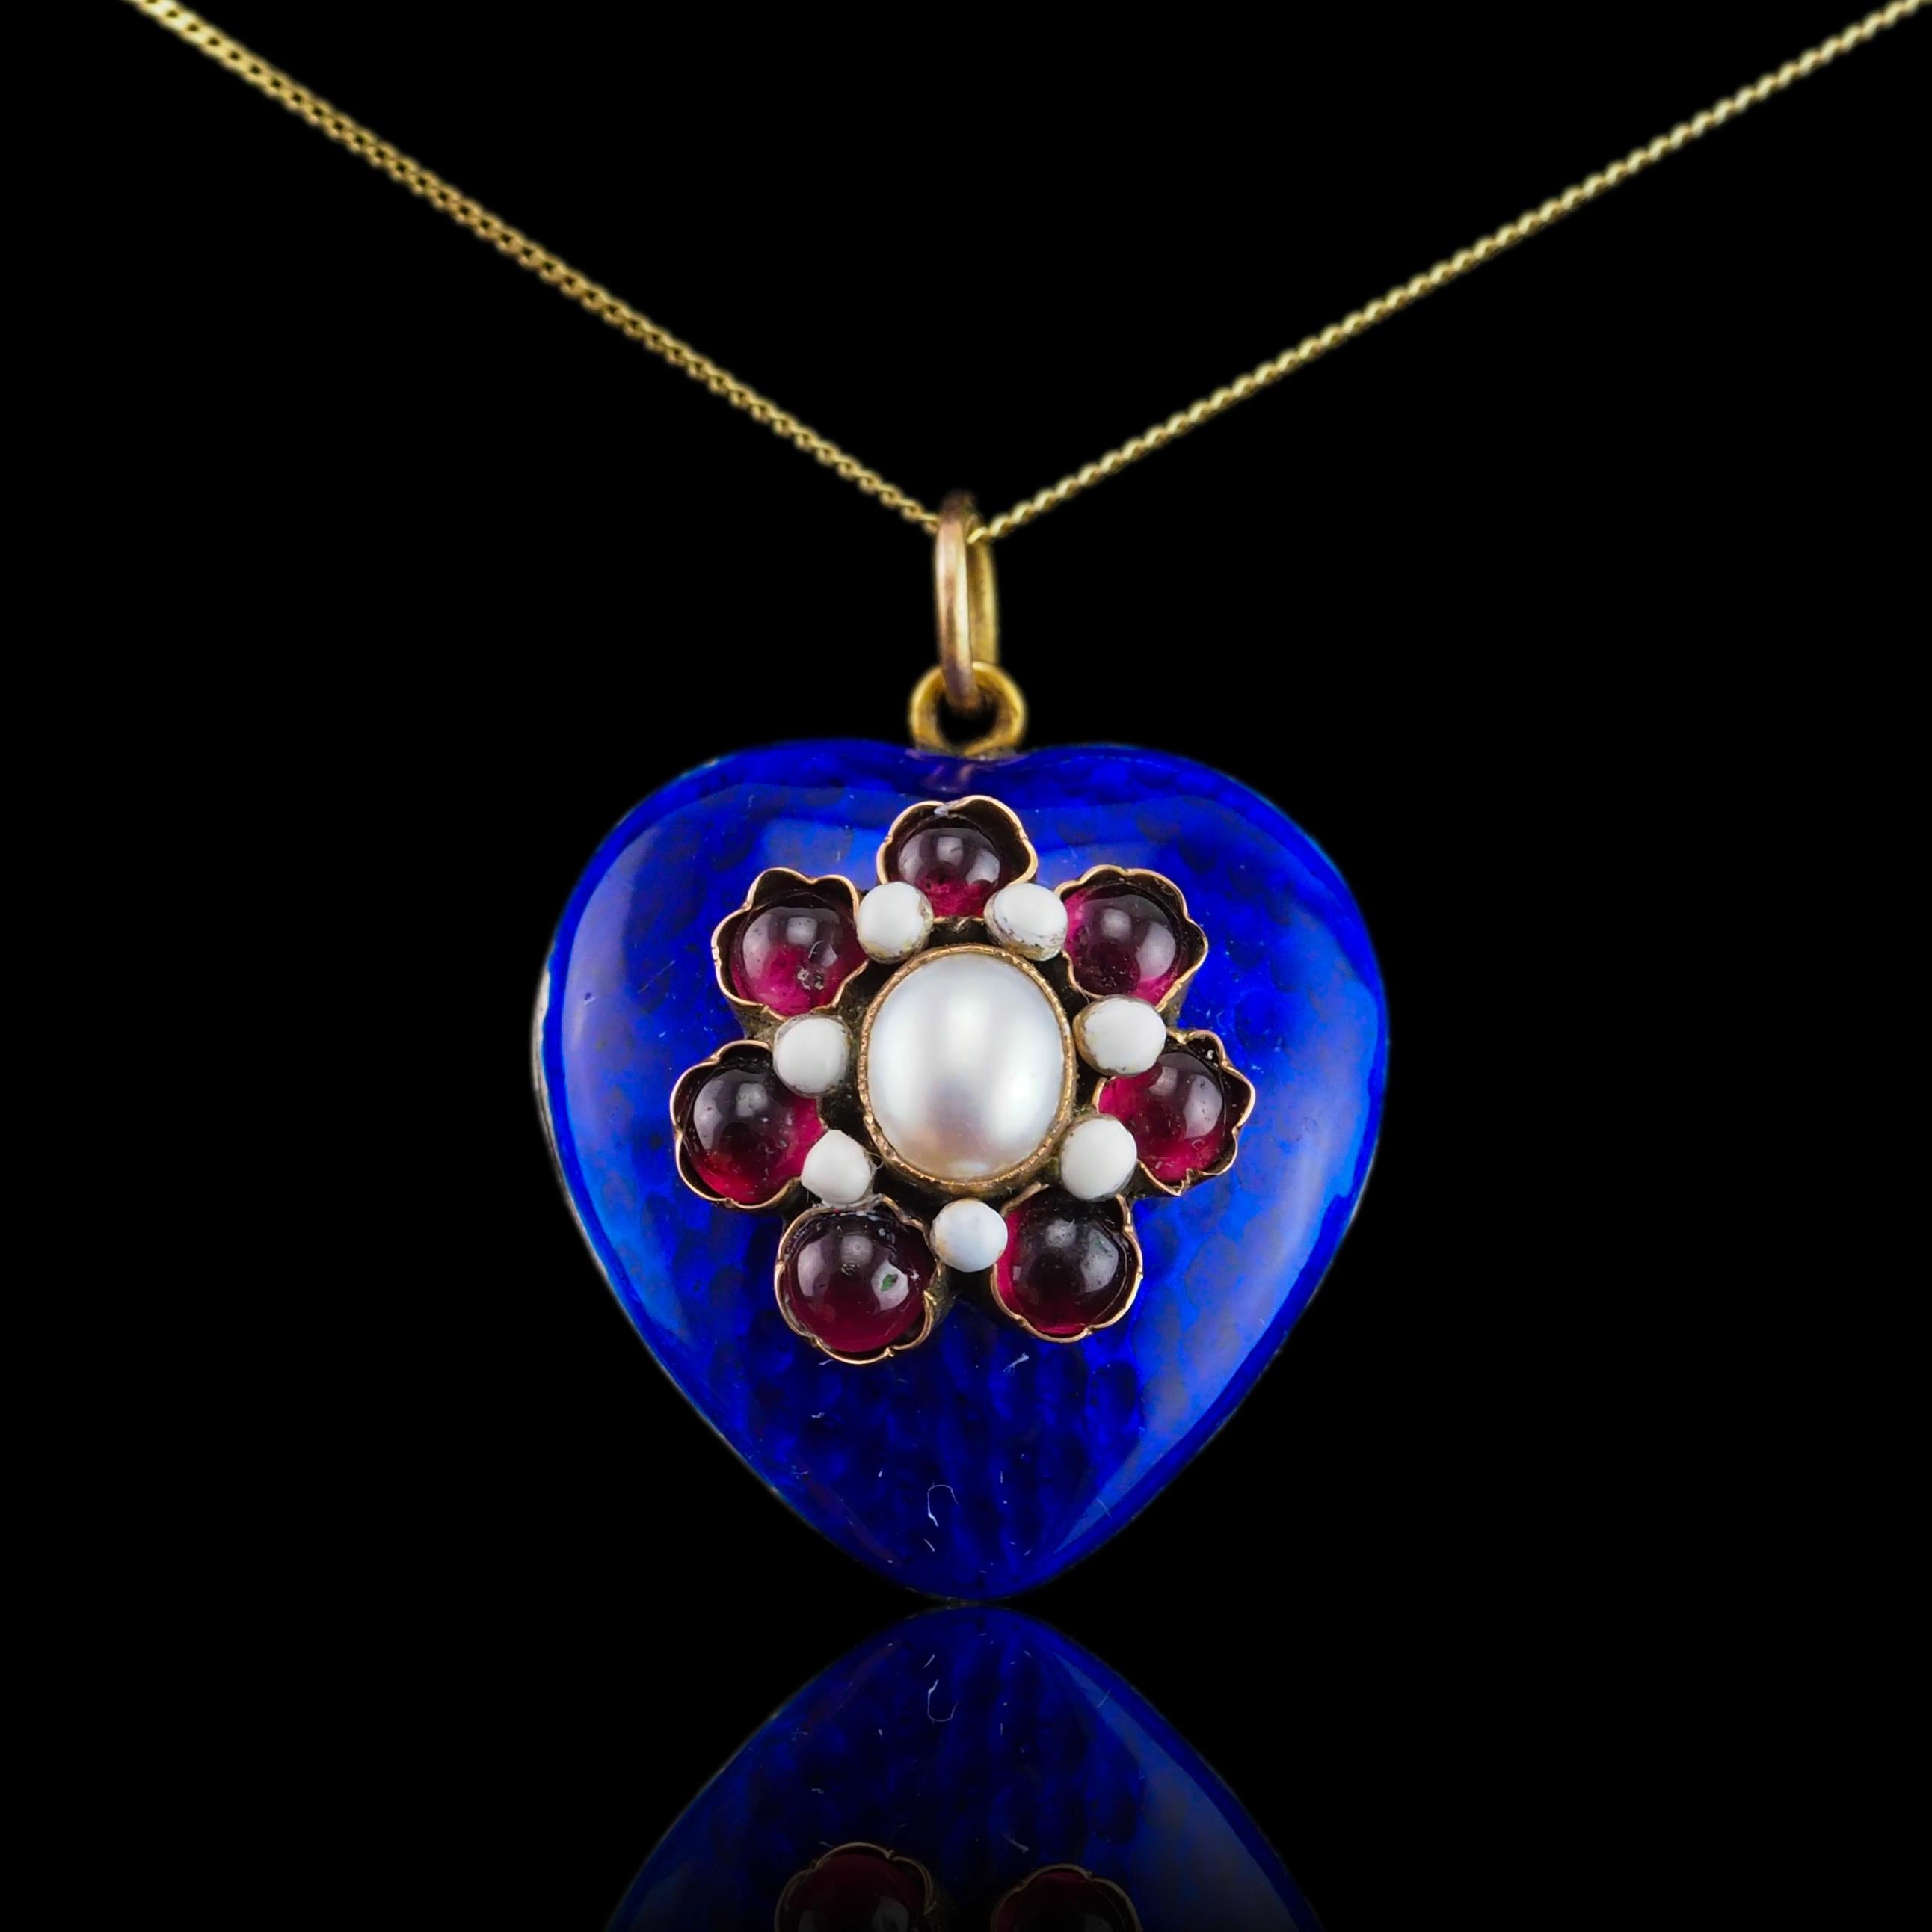 Antique Victorian Blue Enamel Garnet Heart Necklace 'Puffy' Pendant - c.1900 For Sale 7